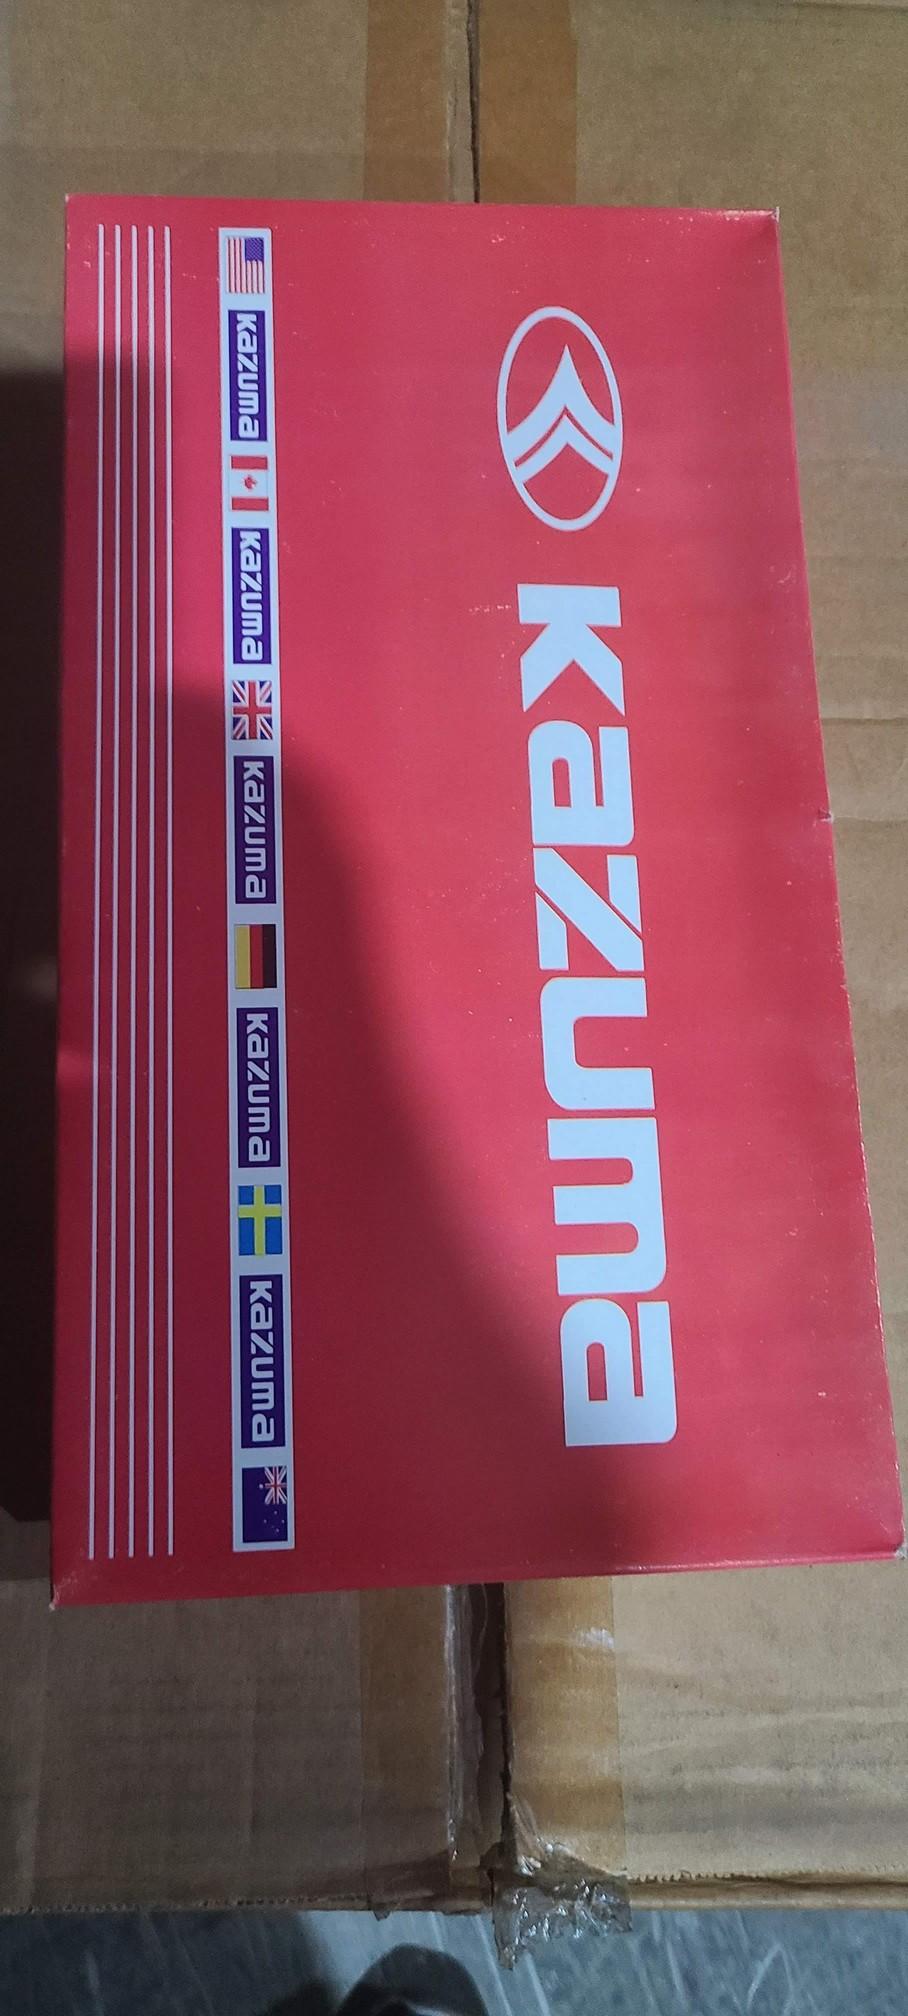 KAZUMA 9004 Halogen Bulb 65 45W 12volt Kazuma  - Brand New in The Box